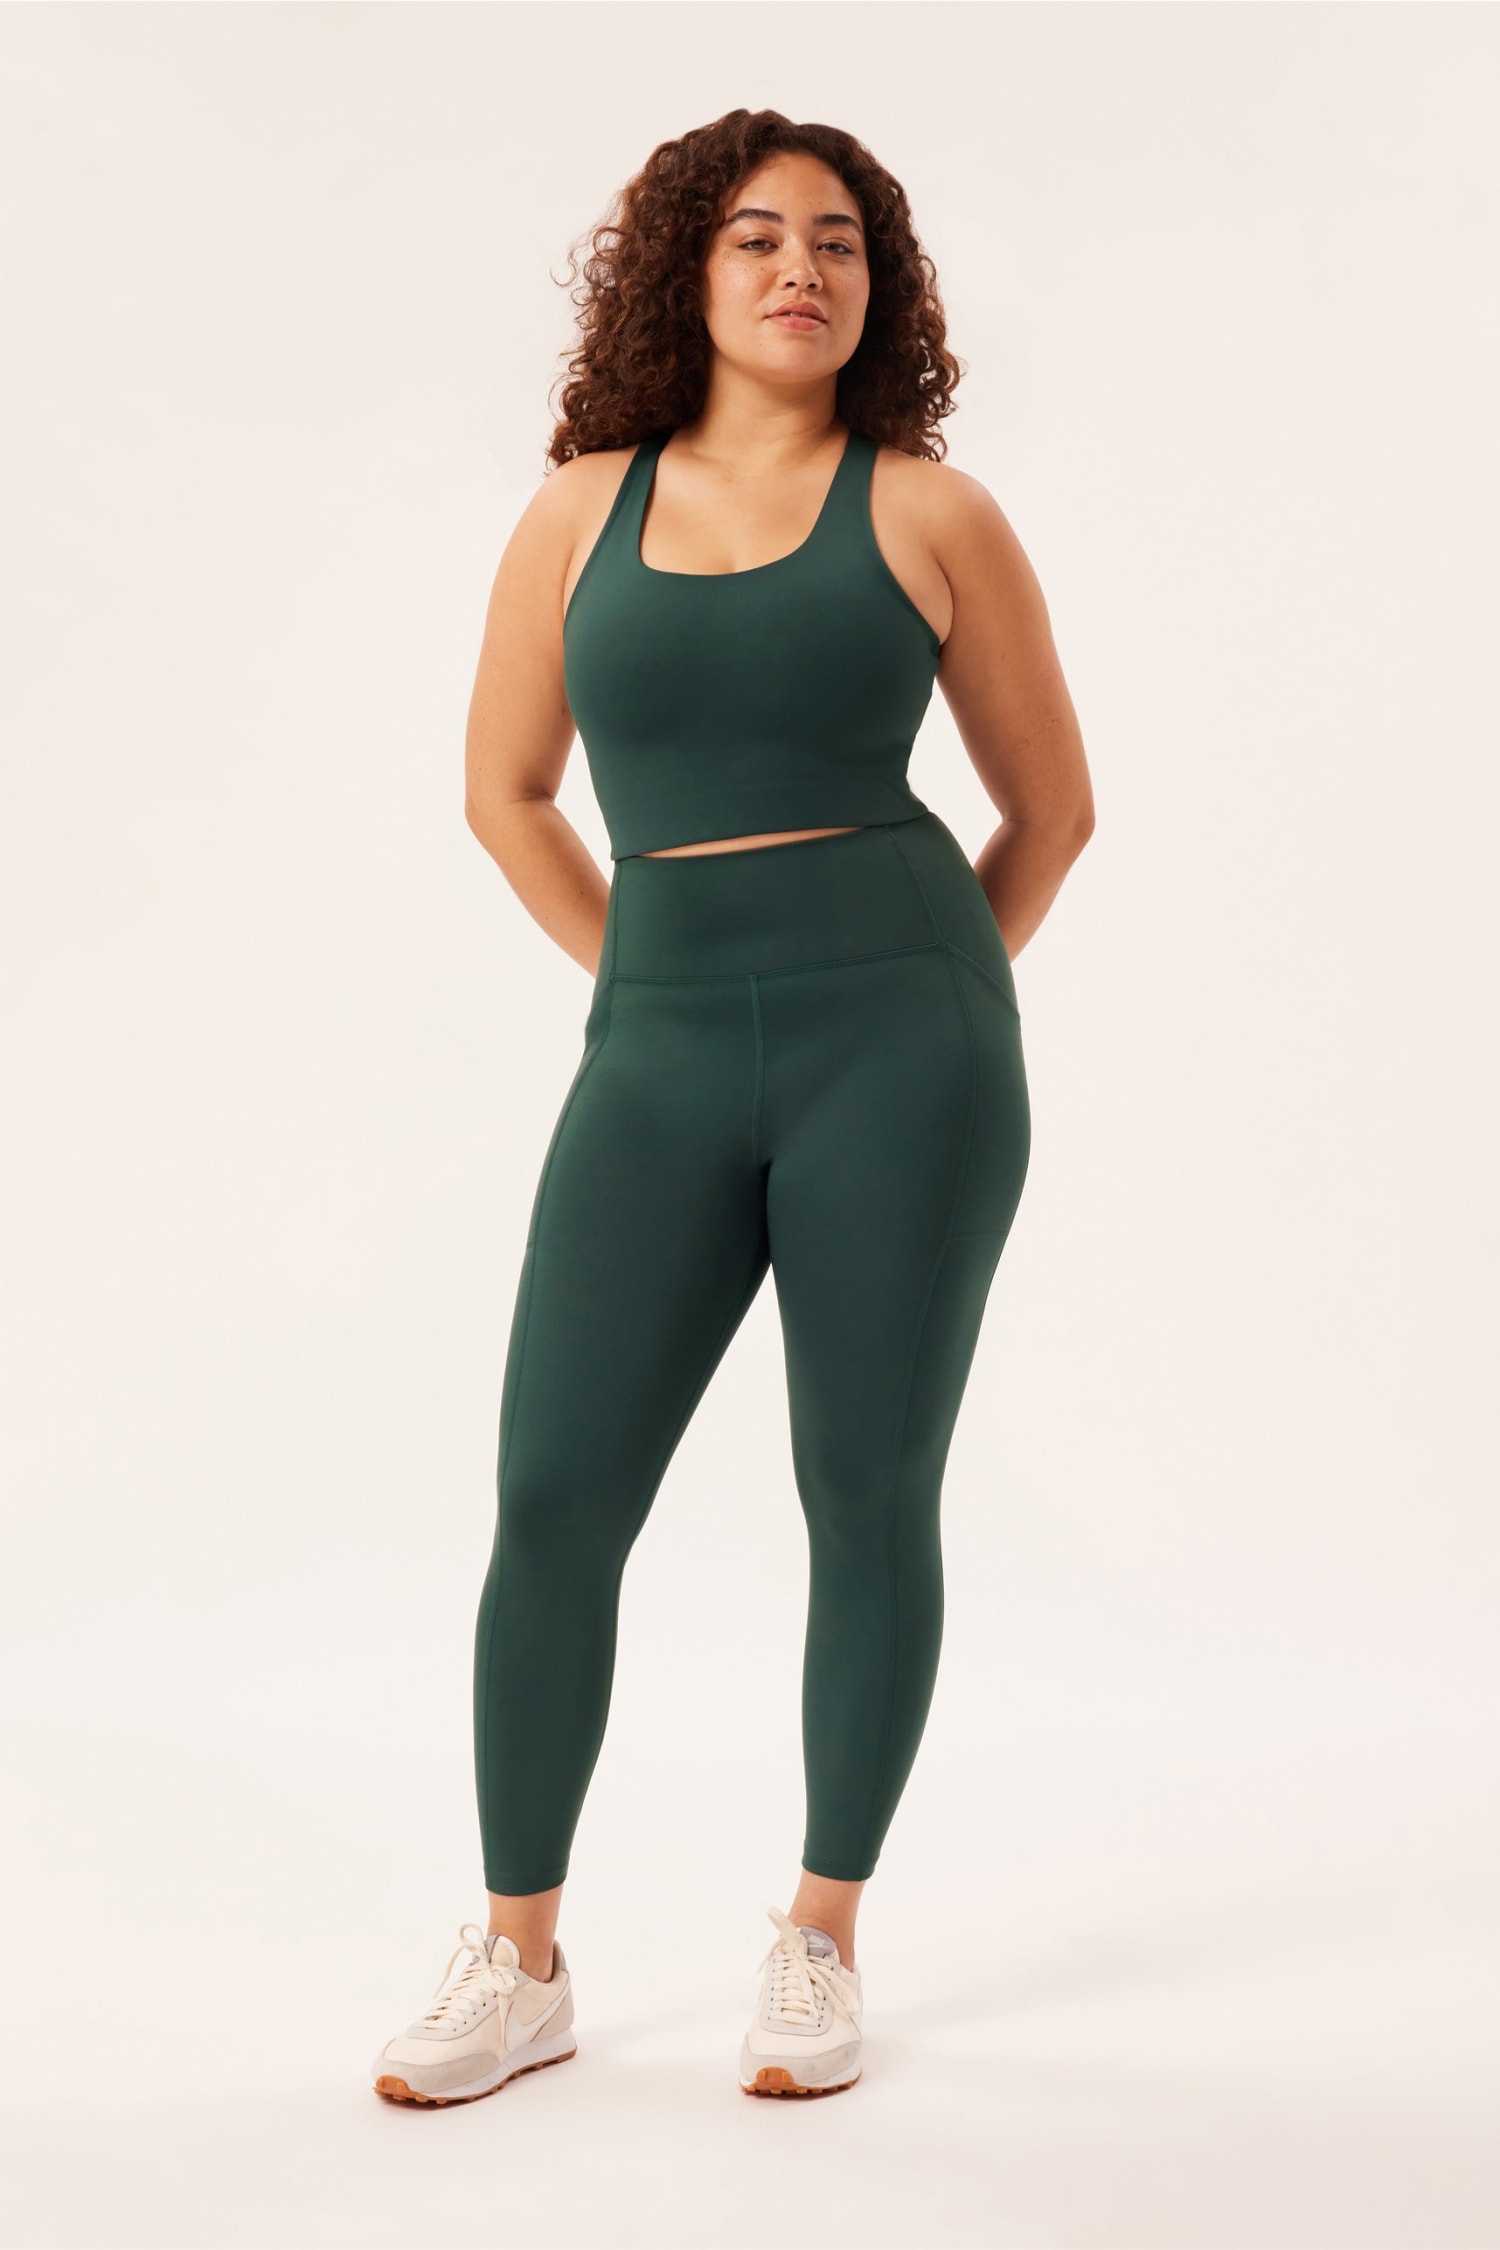 Pocket Capris - Evergreen  Plus size activewear, Plus size fits, Best  leggings